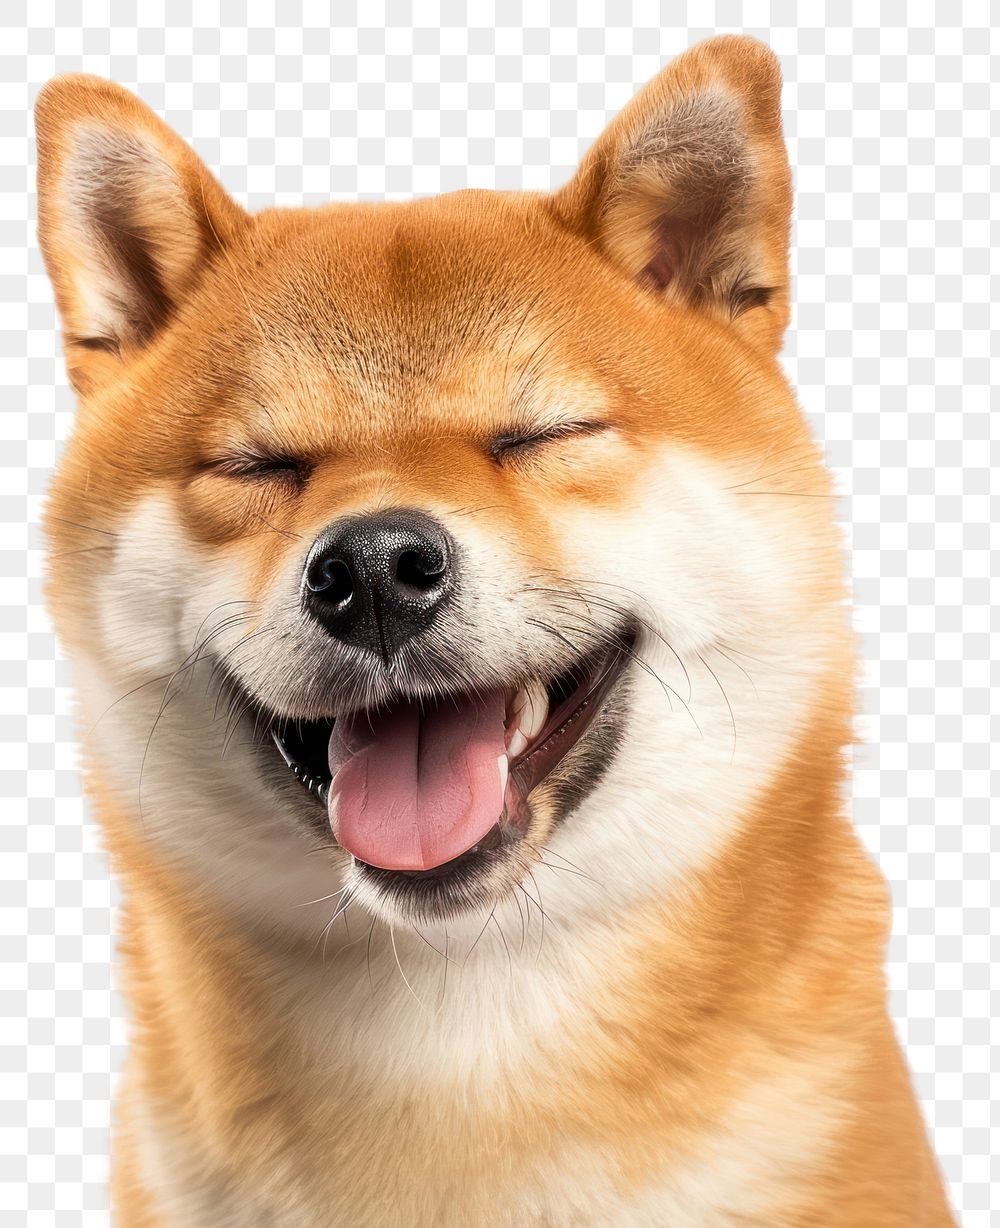 PNG Shiba inu dog joking face mammal animal pet.